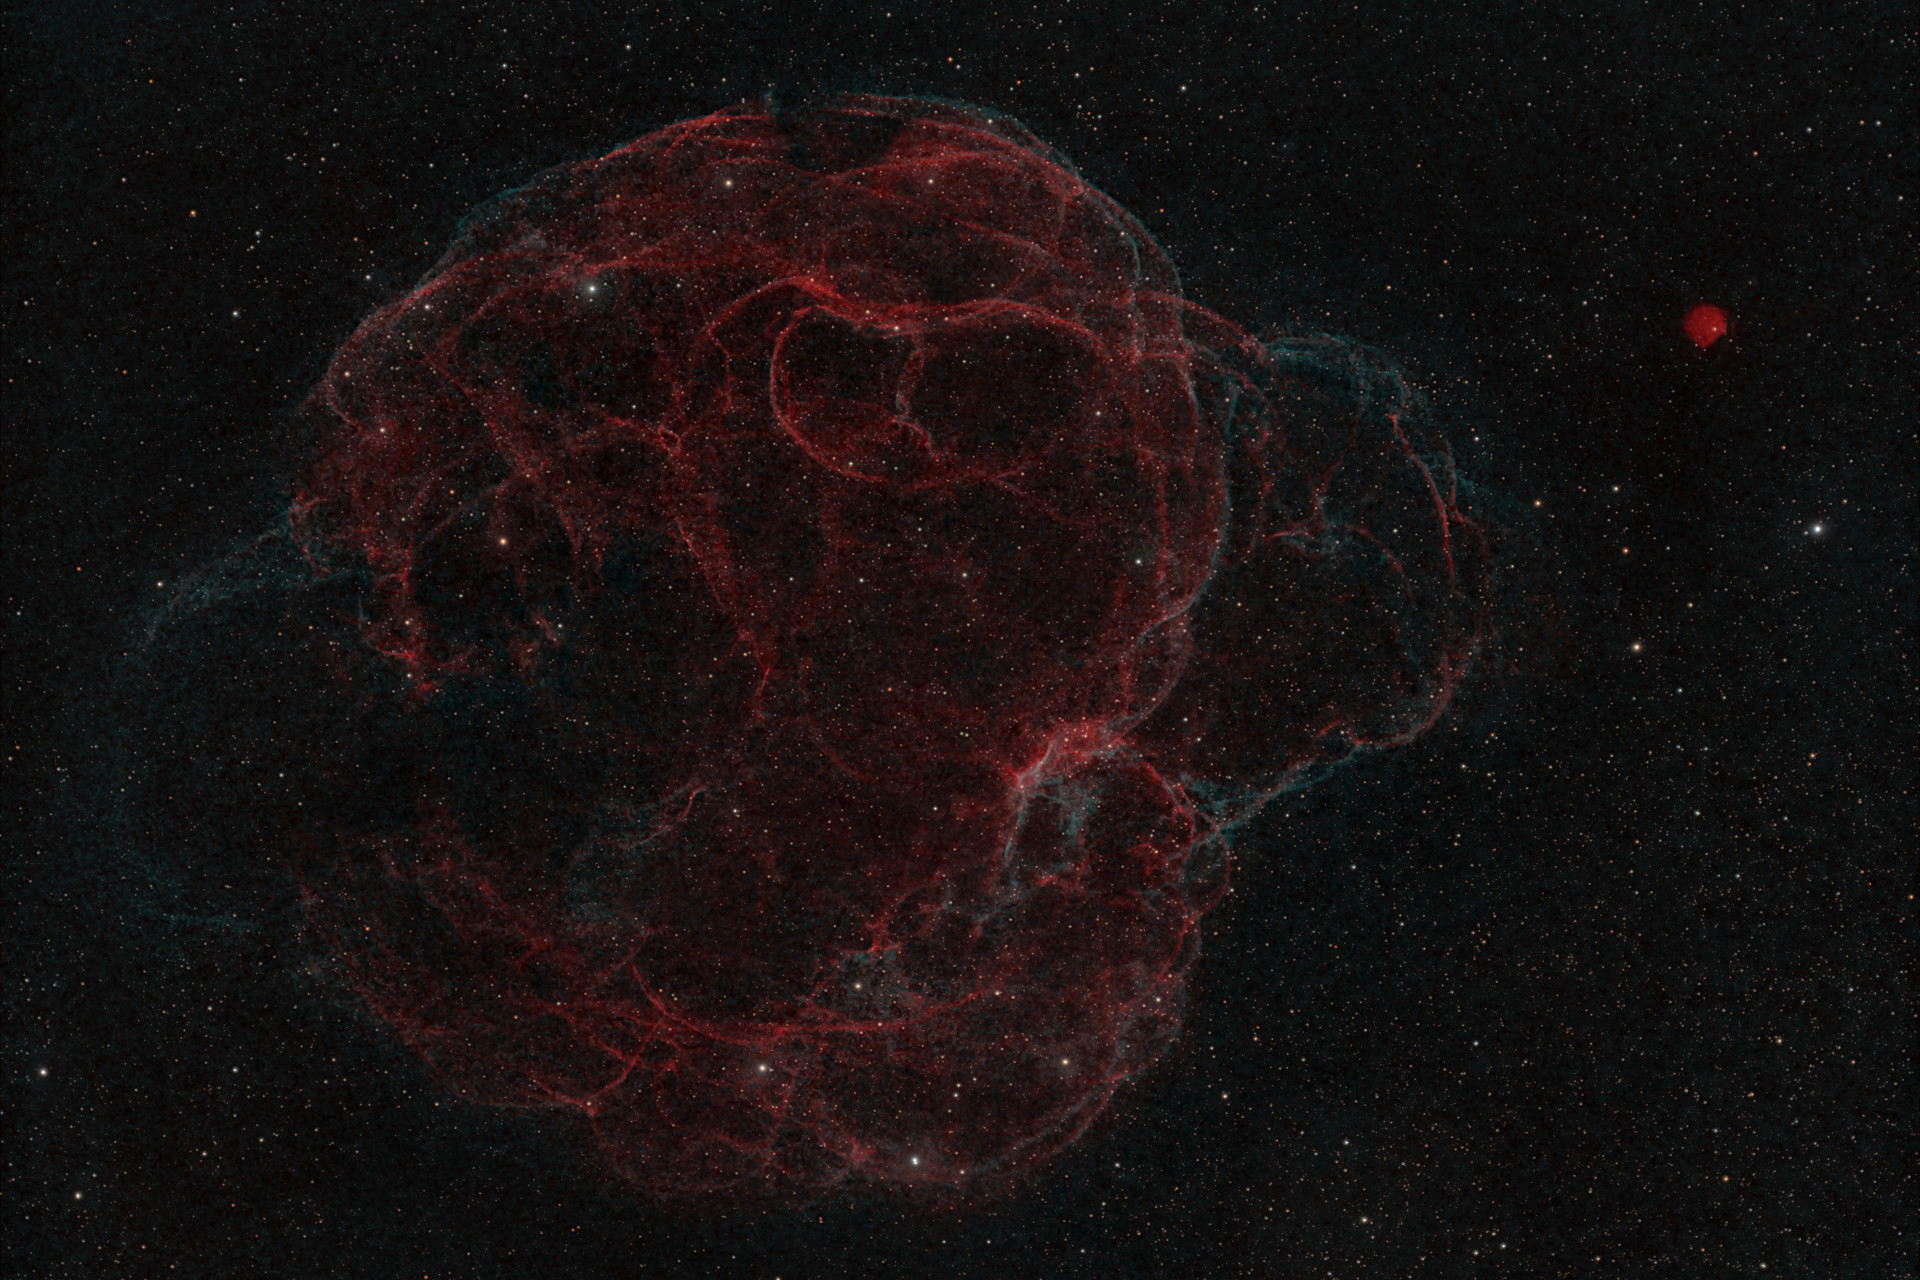 Sharpless 2-240 - The Spaghetti Nebula